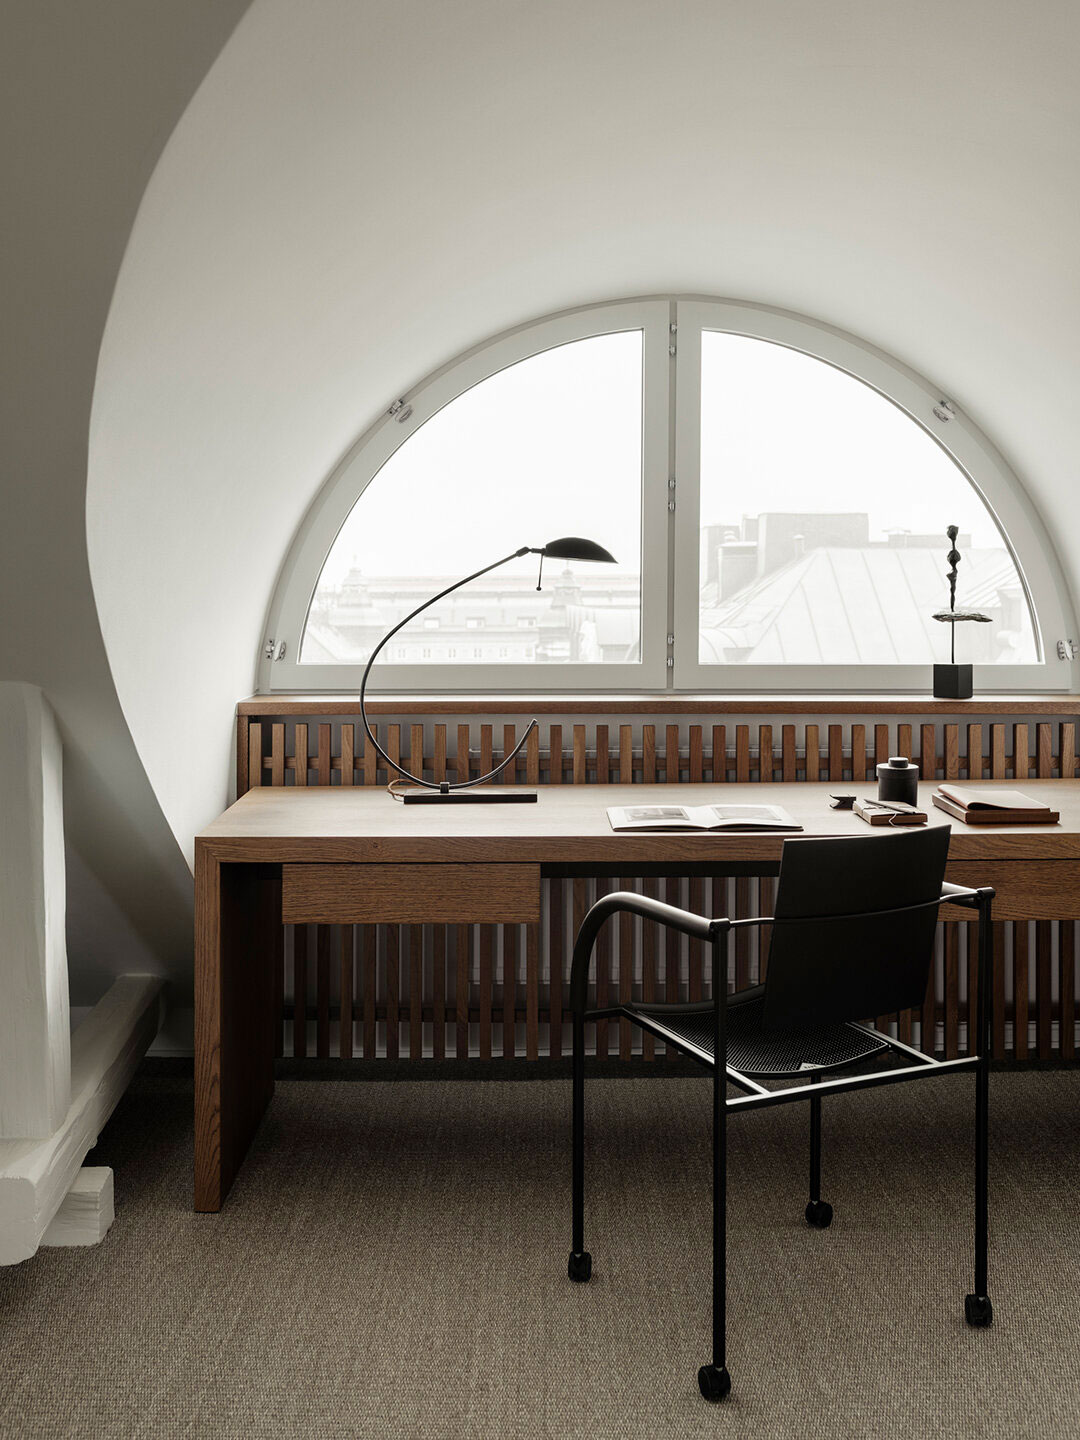 Изысканный дизайн просторной квартиры с мансардой Стокгольме